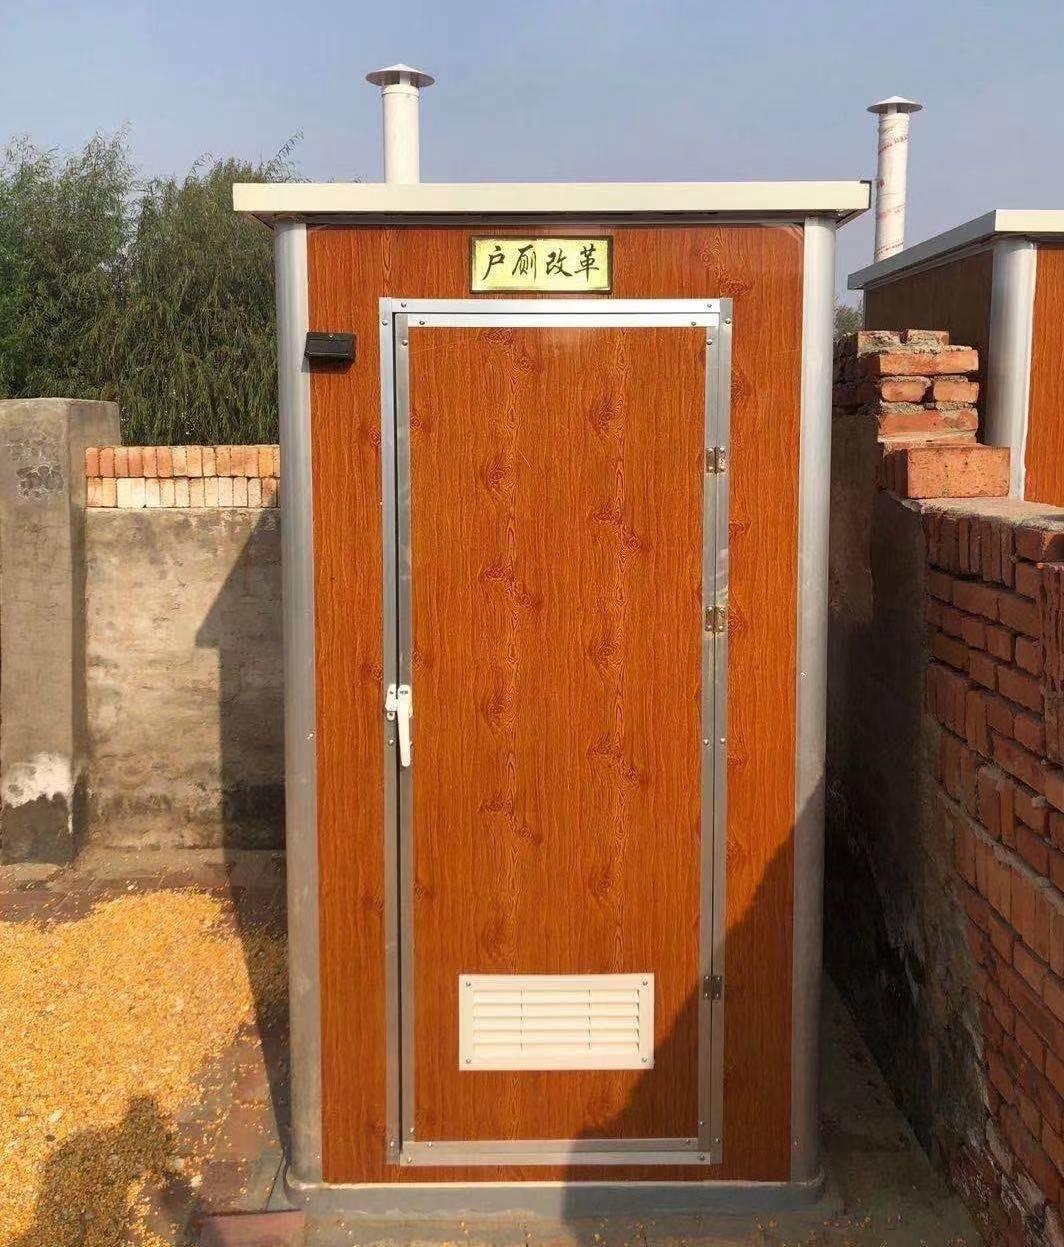 彩钢厕屋 移动式卫生间简易移动厕所农村厕改用泡沫板移动厕所